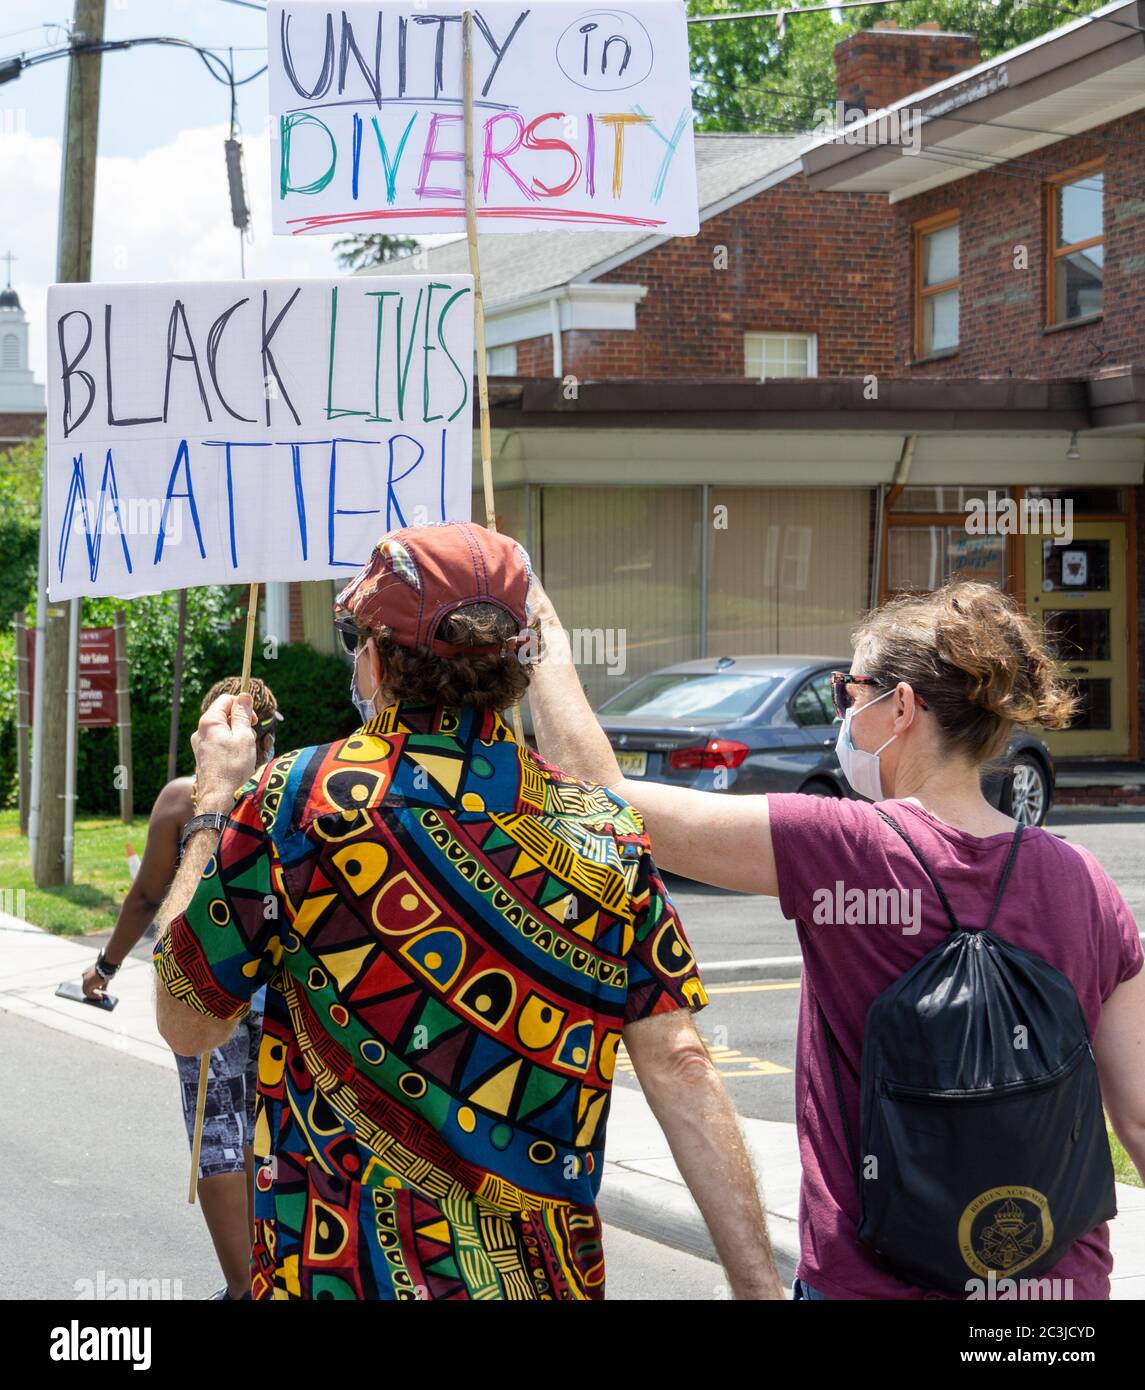 Le dix-septième mars, des vies noires comptent protester George Floyd - couple protestant ensemble en marchant dans les rues et en tenant des panneaux Unity dans Diversity Black li Banque D'Images